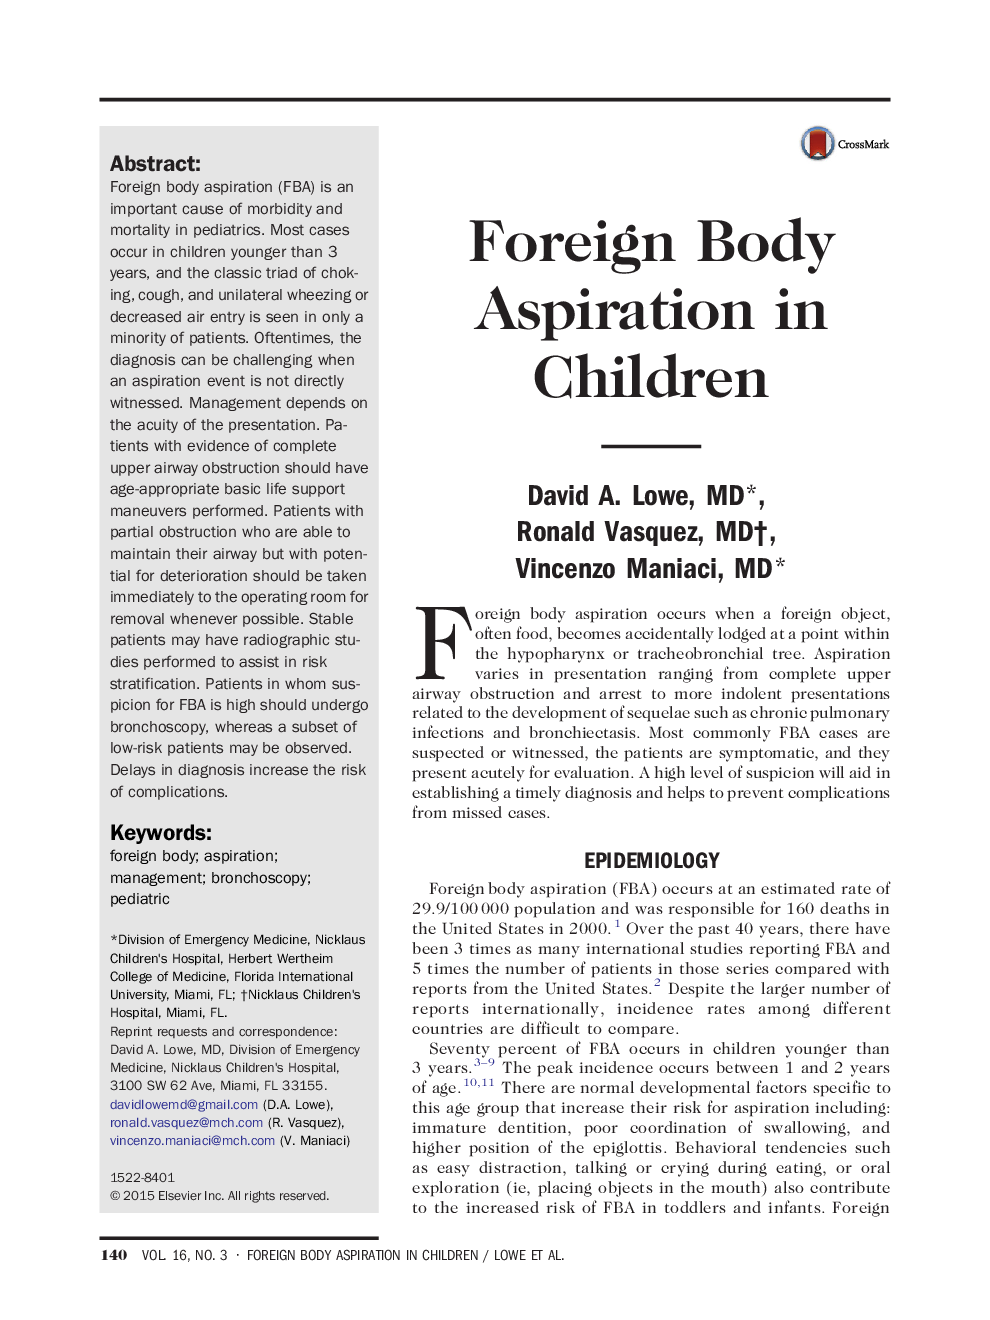 آسپیراسیون جسم خارجی در کودکان